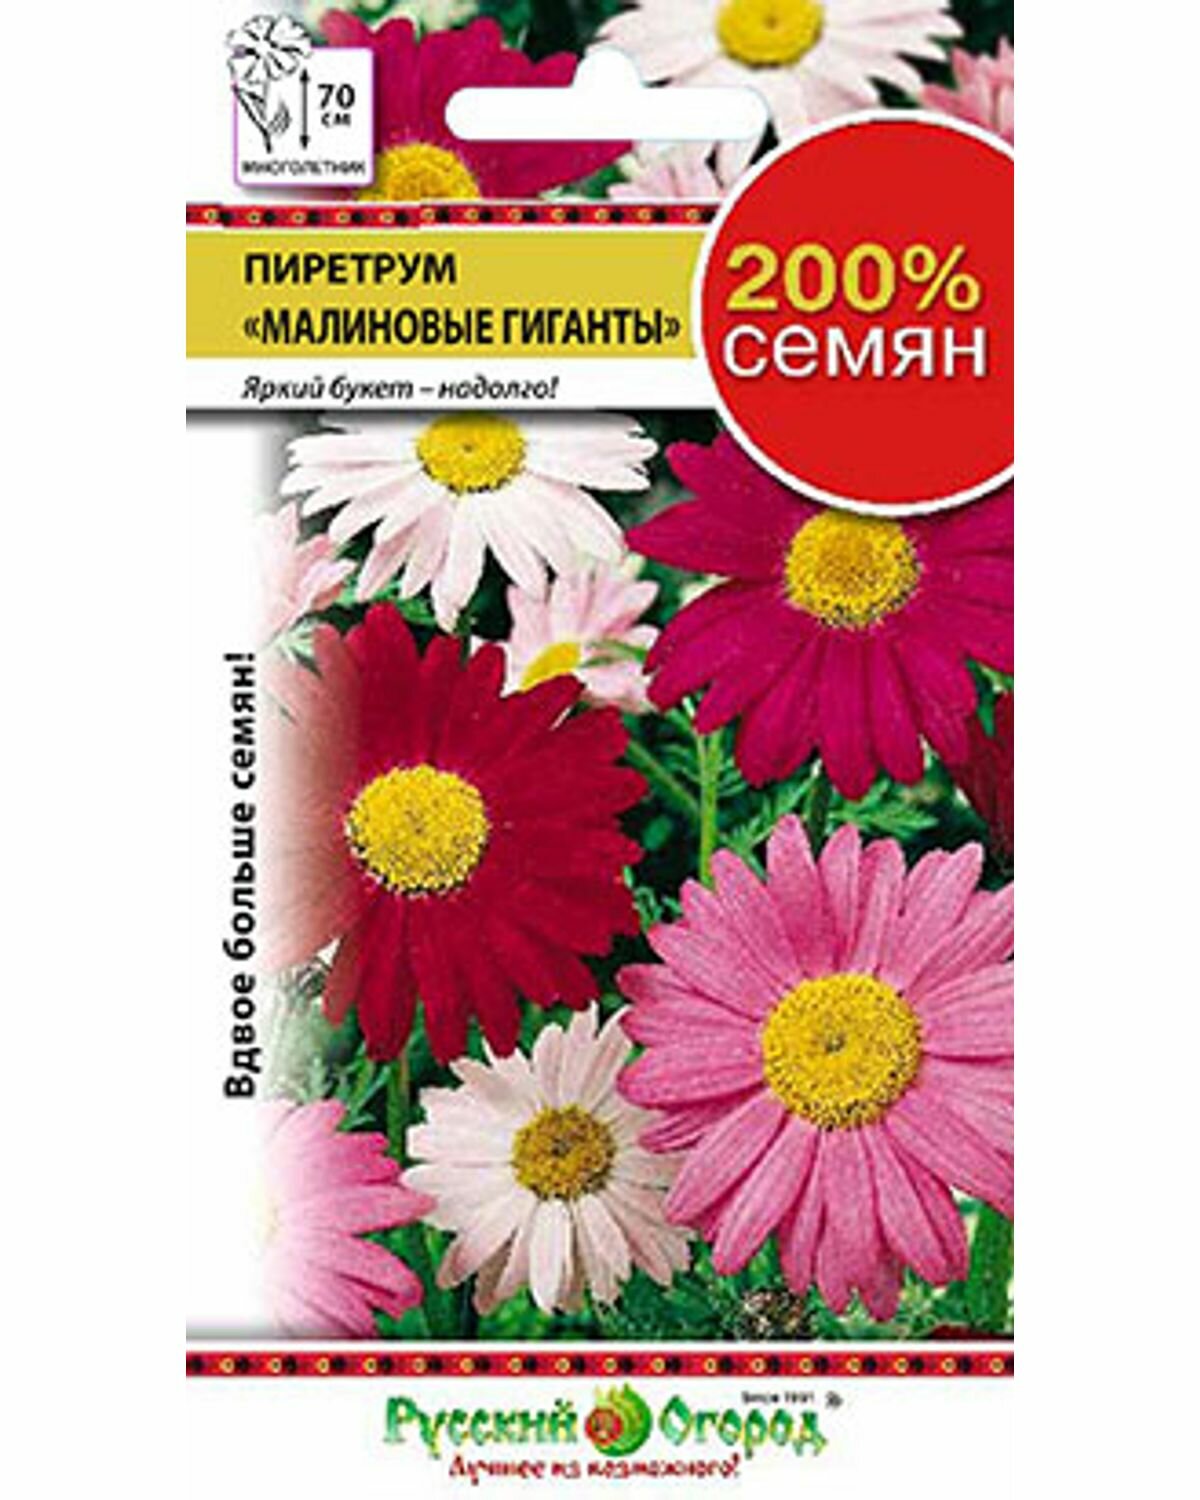 Цветы Пиретрум Малиновые гиганты (200%) (04г)